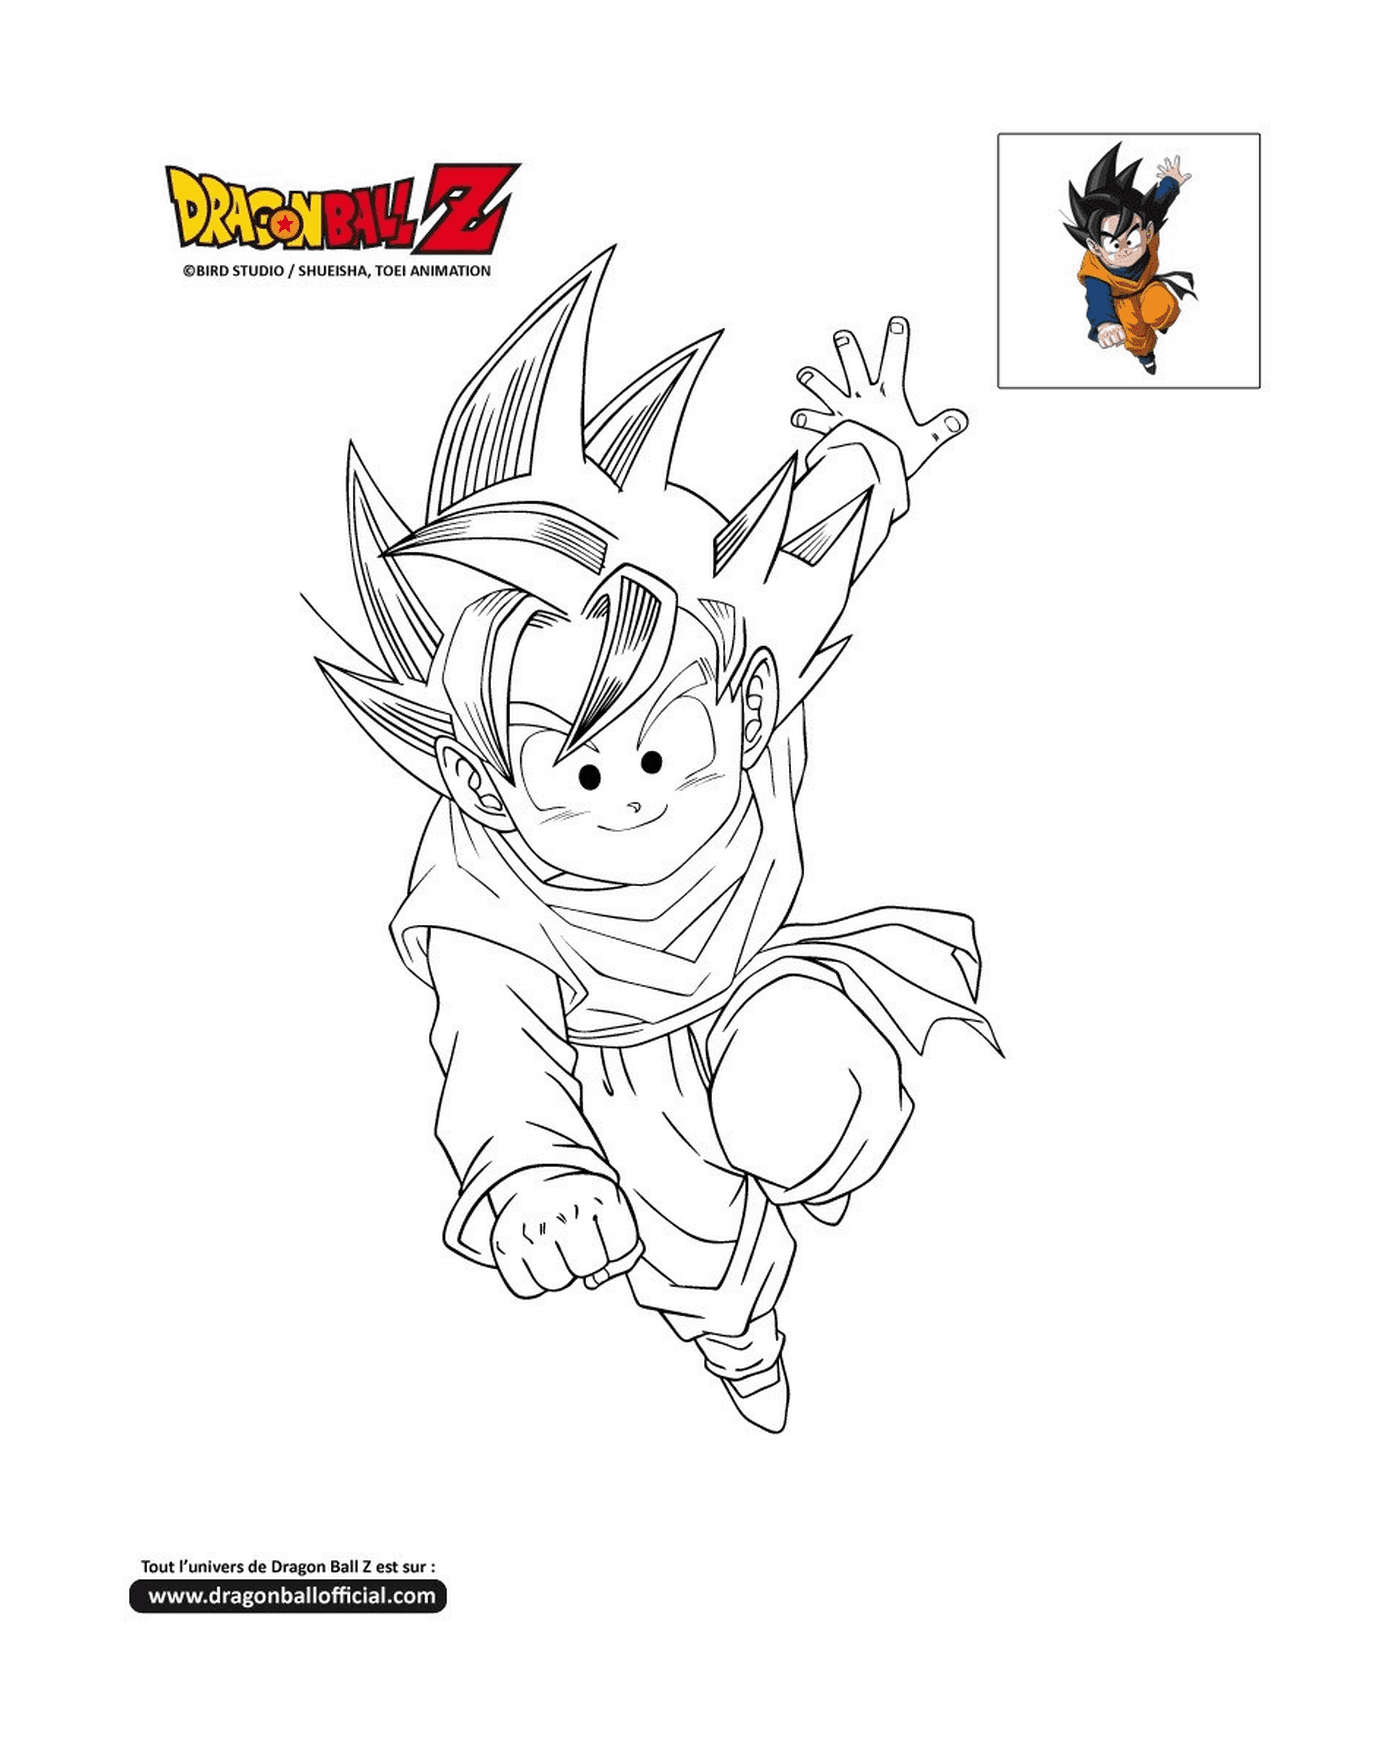   Goten, un jeune Goku sautant dans les airs dans Dragon Ball Z 